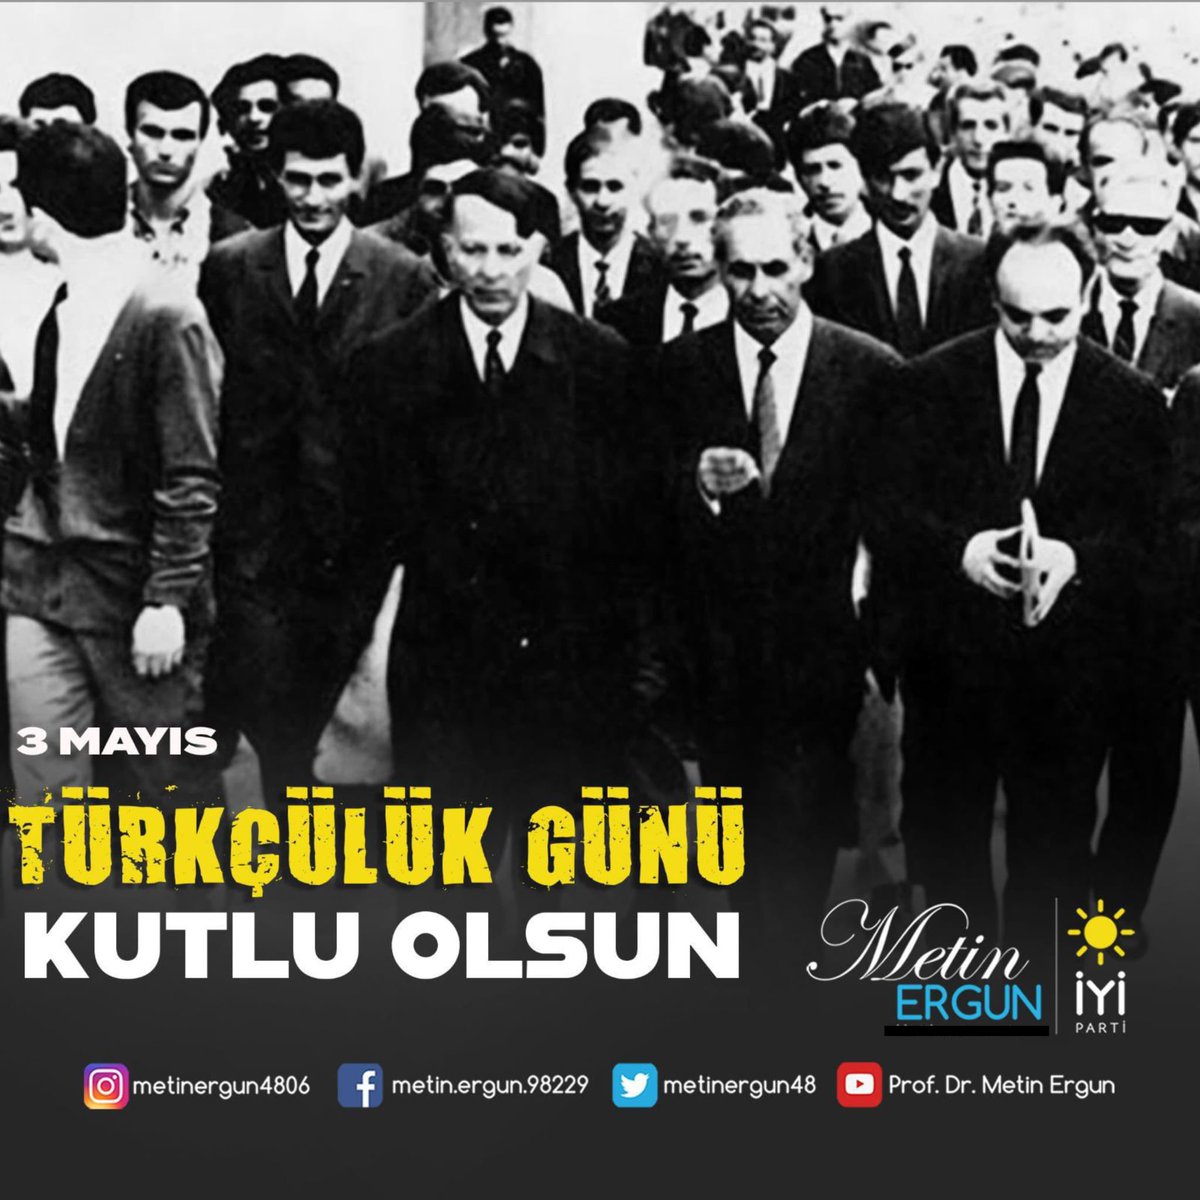 “Türkçülük öyle şerefli bir bayraktır ki, onu vatanın her köşesinde durmadan dalgalandırmak her Türk’ün ilk ve milli vazifesidir.' —Mustafa Kemal Atatürk #3MayısTürkçülükGünü kutlu olsun.